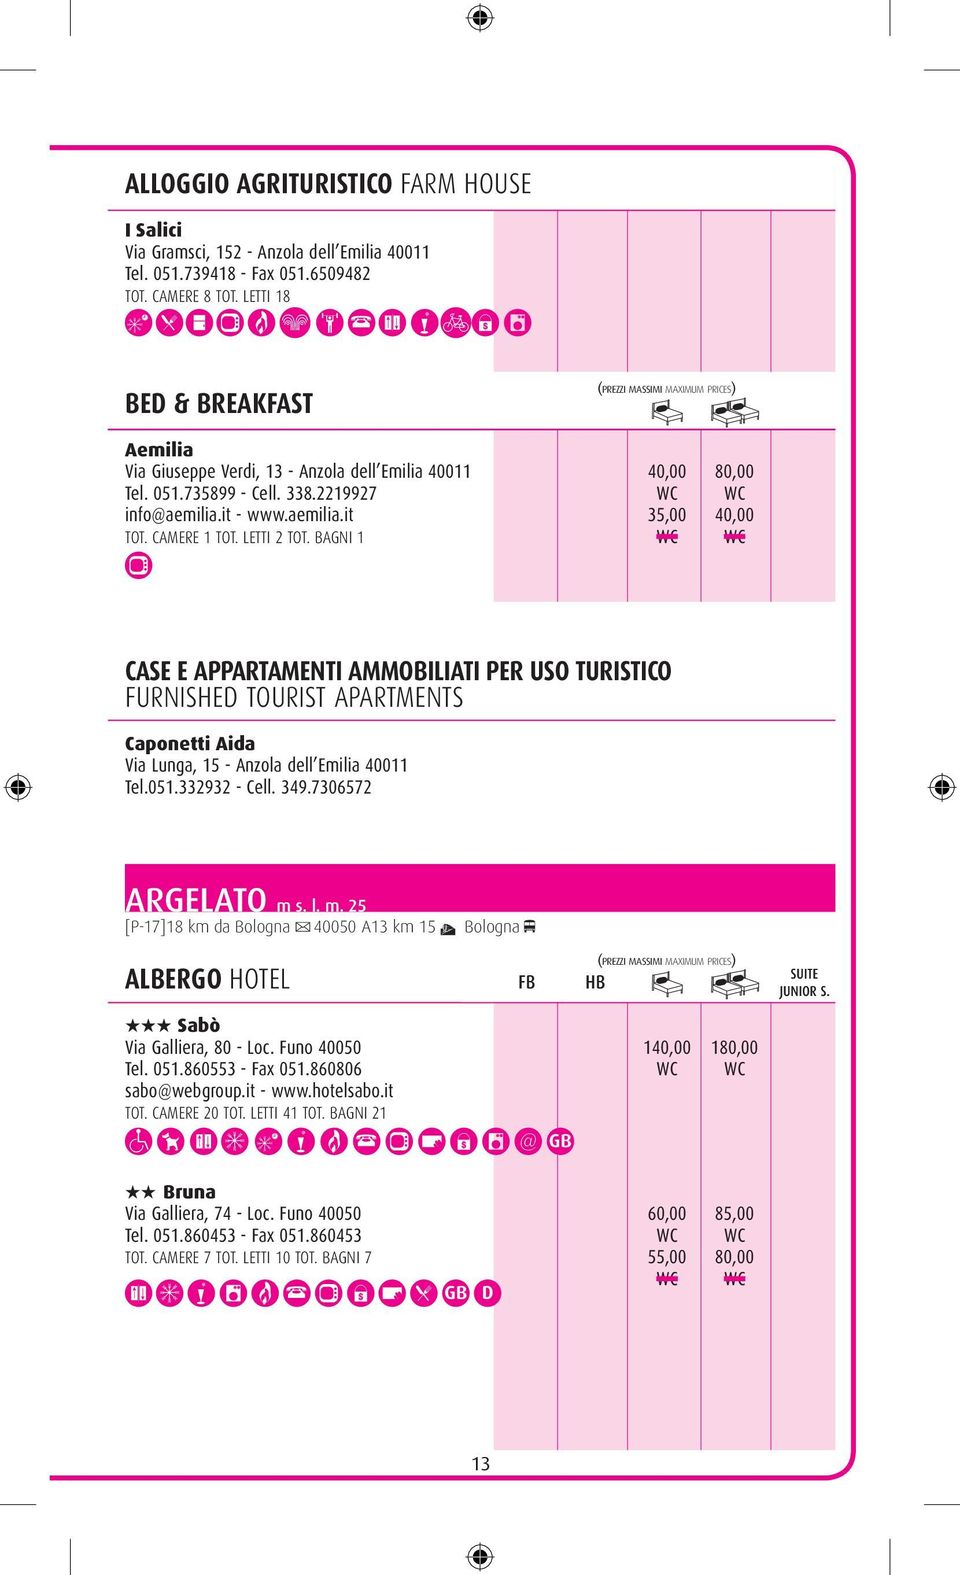 it - www.aemilia.it 35,00 40,00 CASE E APPartamenti ammobiliati PER uso turistico FURNISHED TOURIST APARTMENTS Caponetti Aida Via Lunga, 15 - Anzola dell Emilia 40011 Tel.051.332932 - Cell. 349.